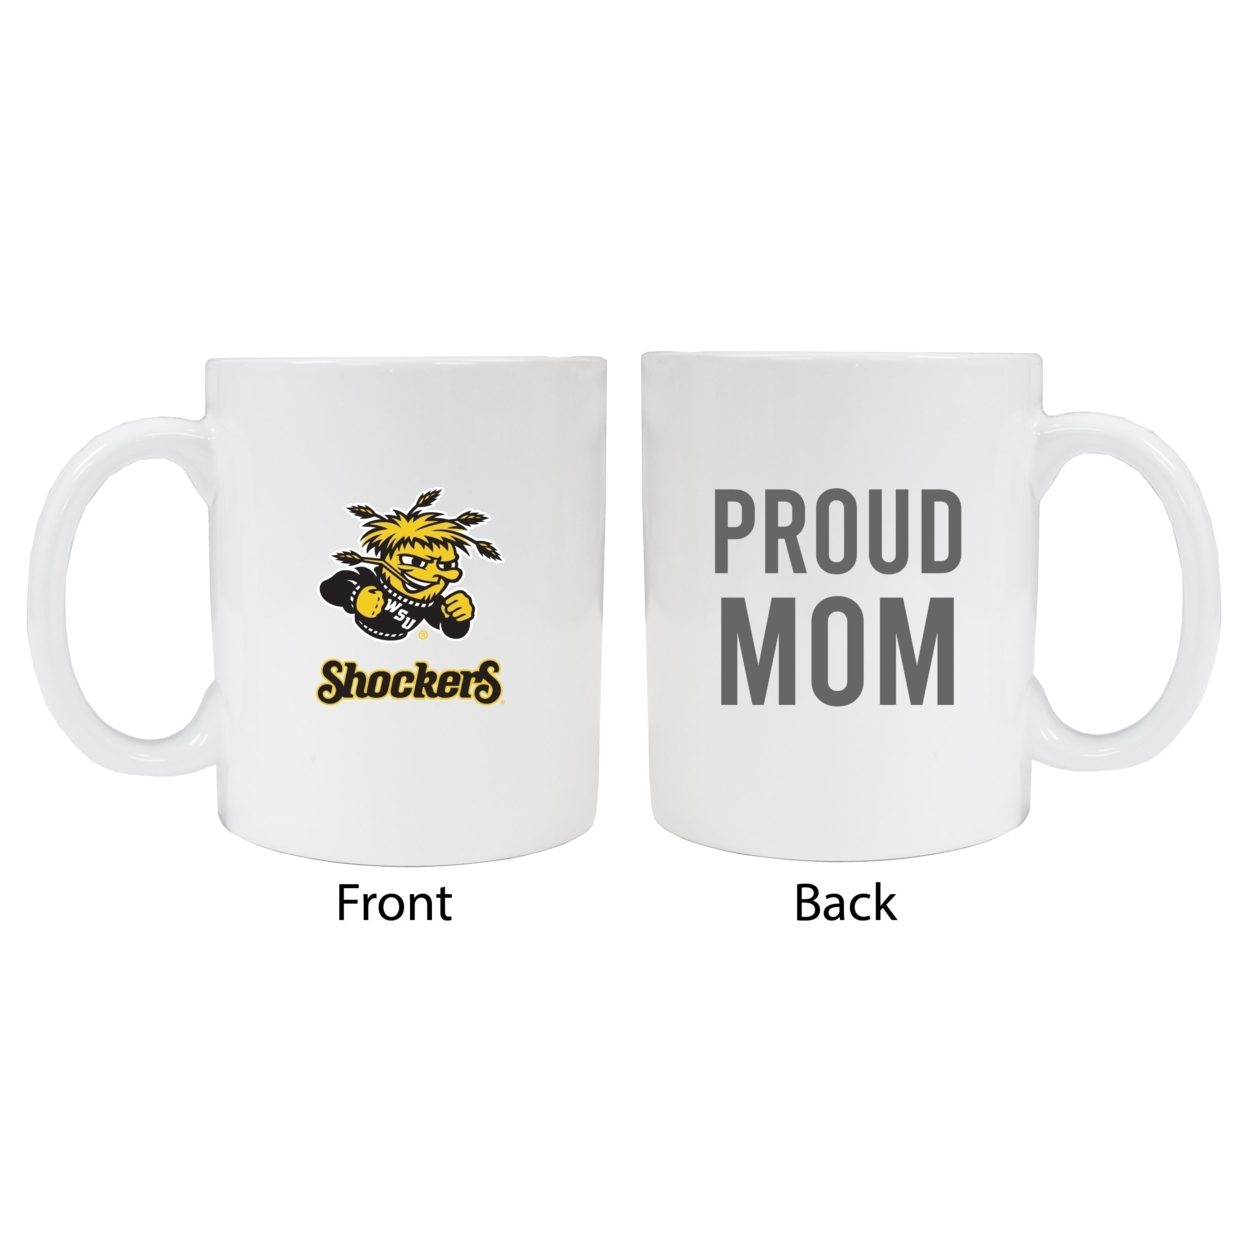 Wichita State Shockers Proud Mom Ceramic Coffee Mug - White (2 Pack)